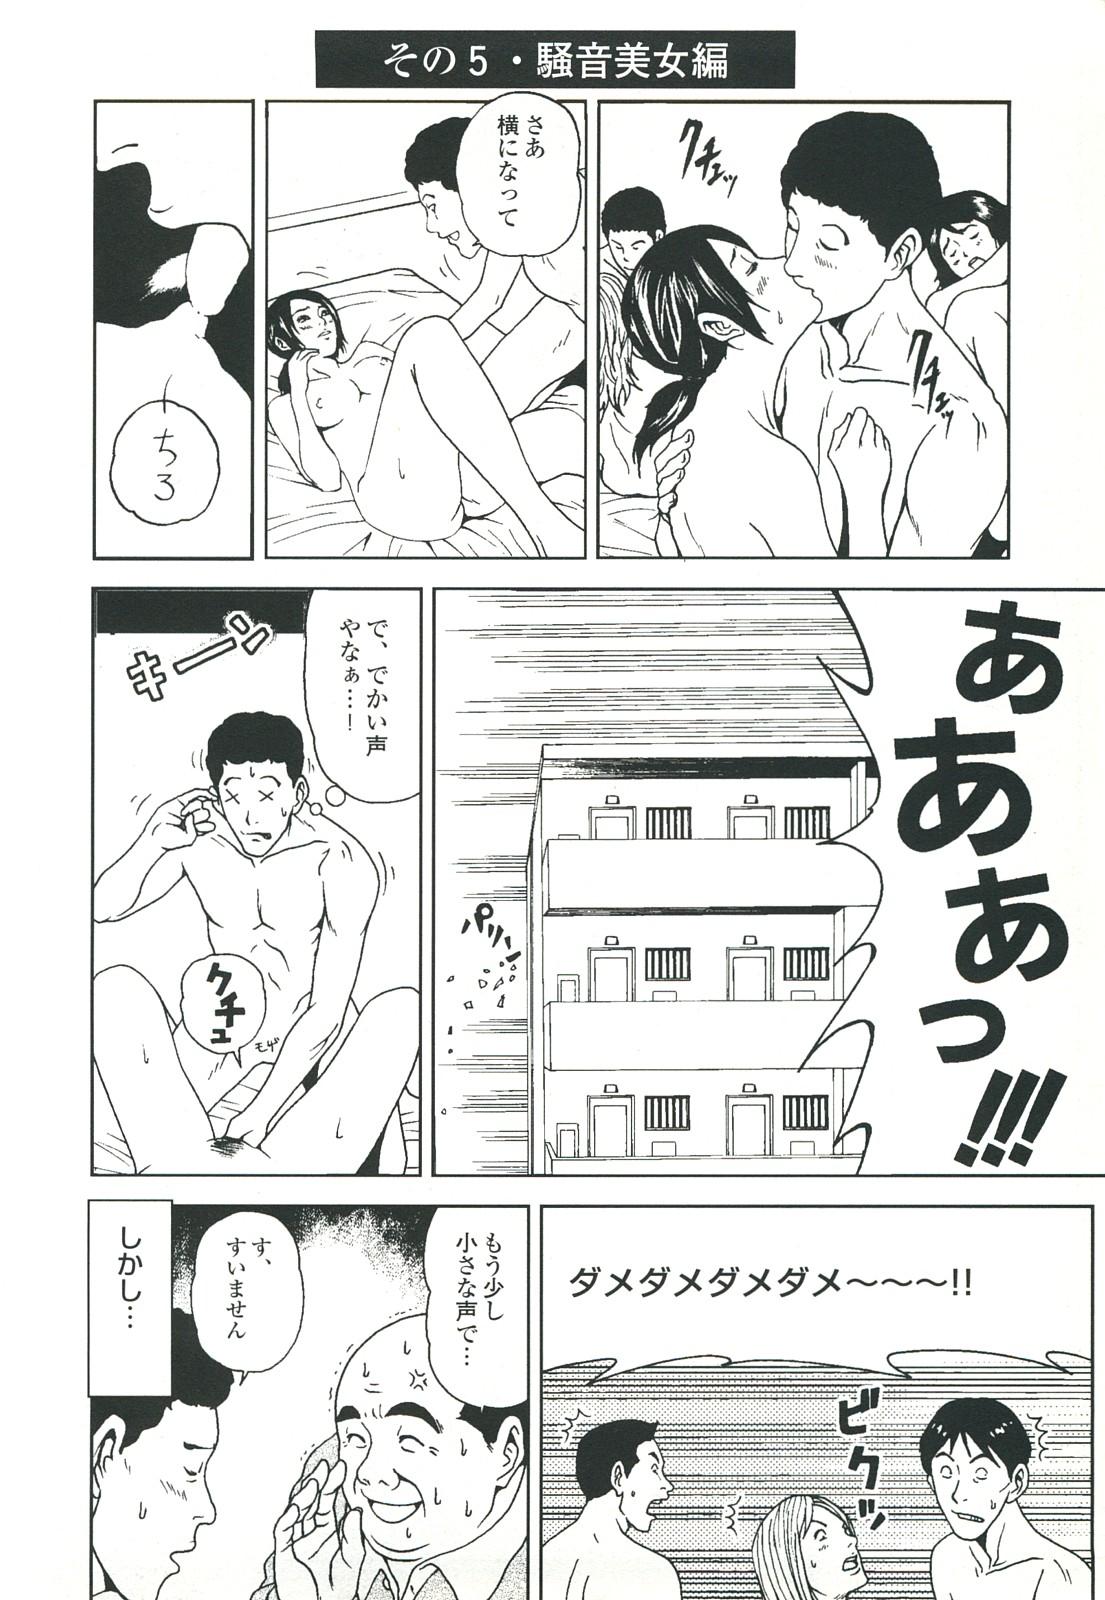 コミック裏モノJAPAN Vol.18 今井のりたつスペシャル号 67